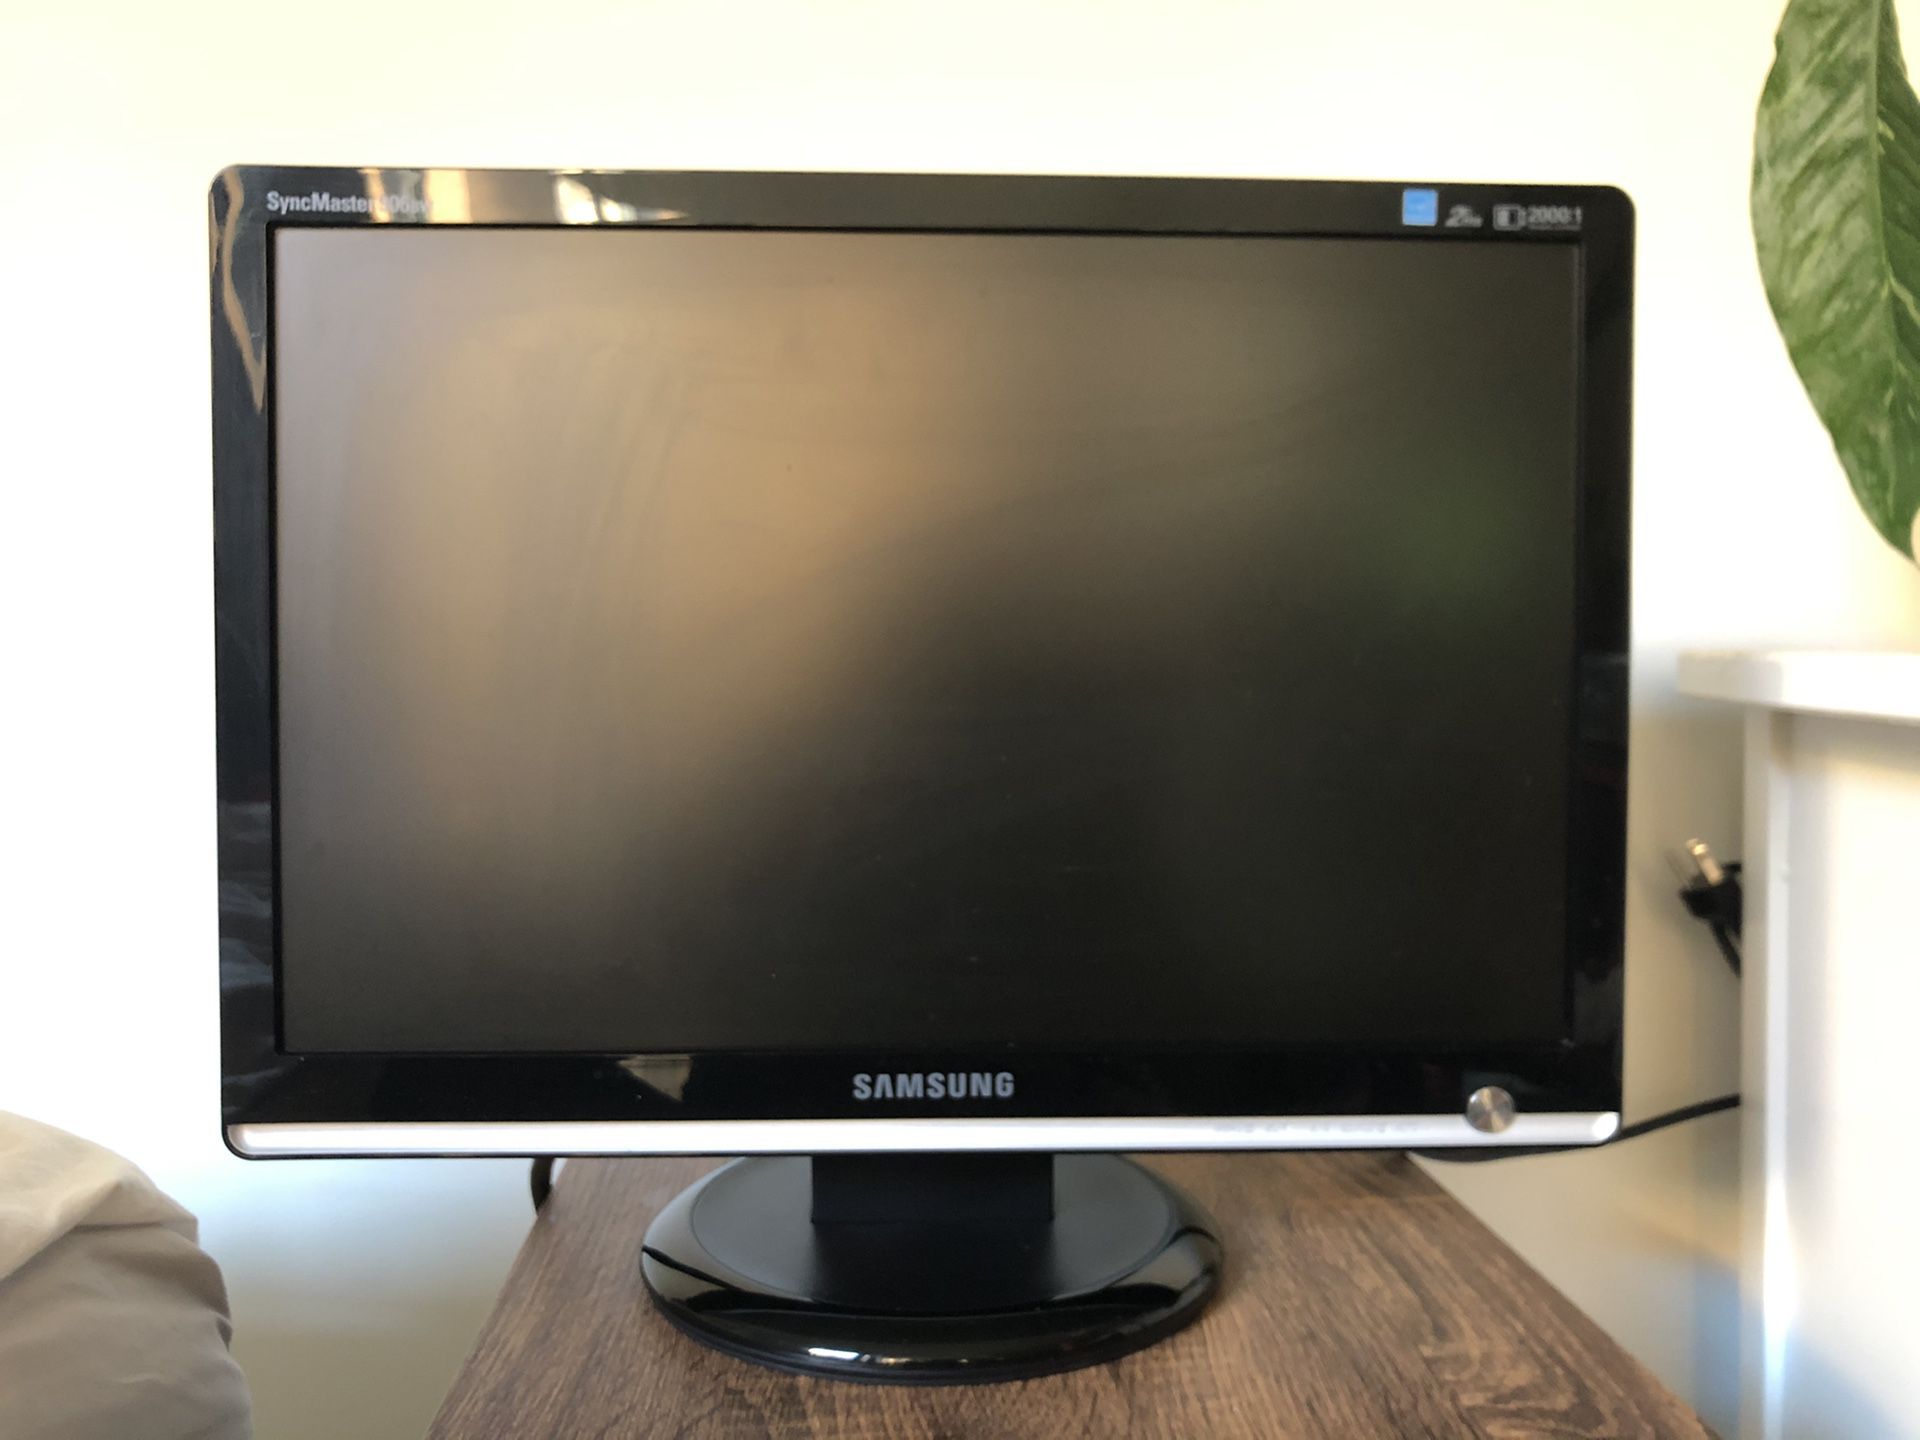 Samsung Computer Monitor 19” LCD